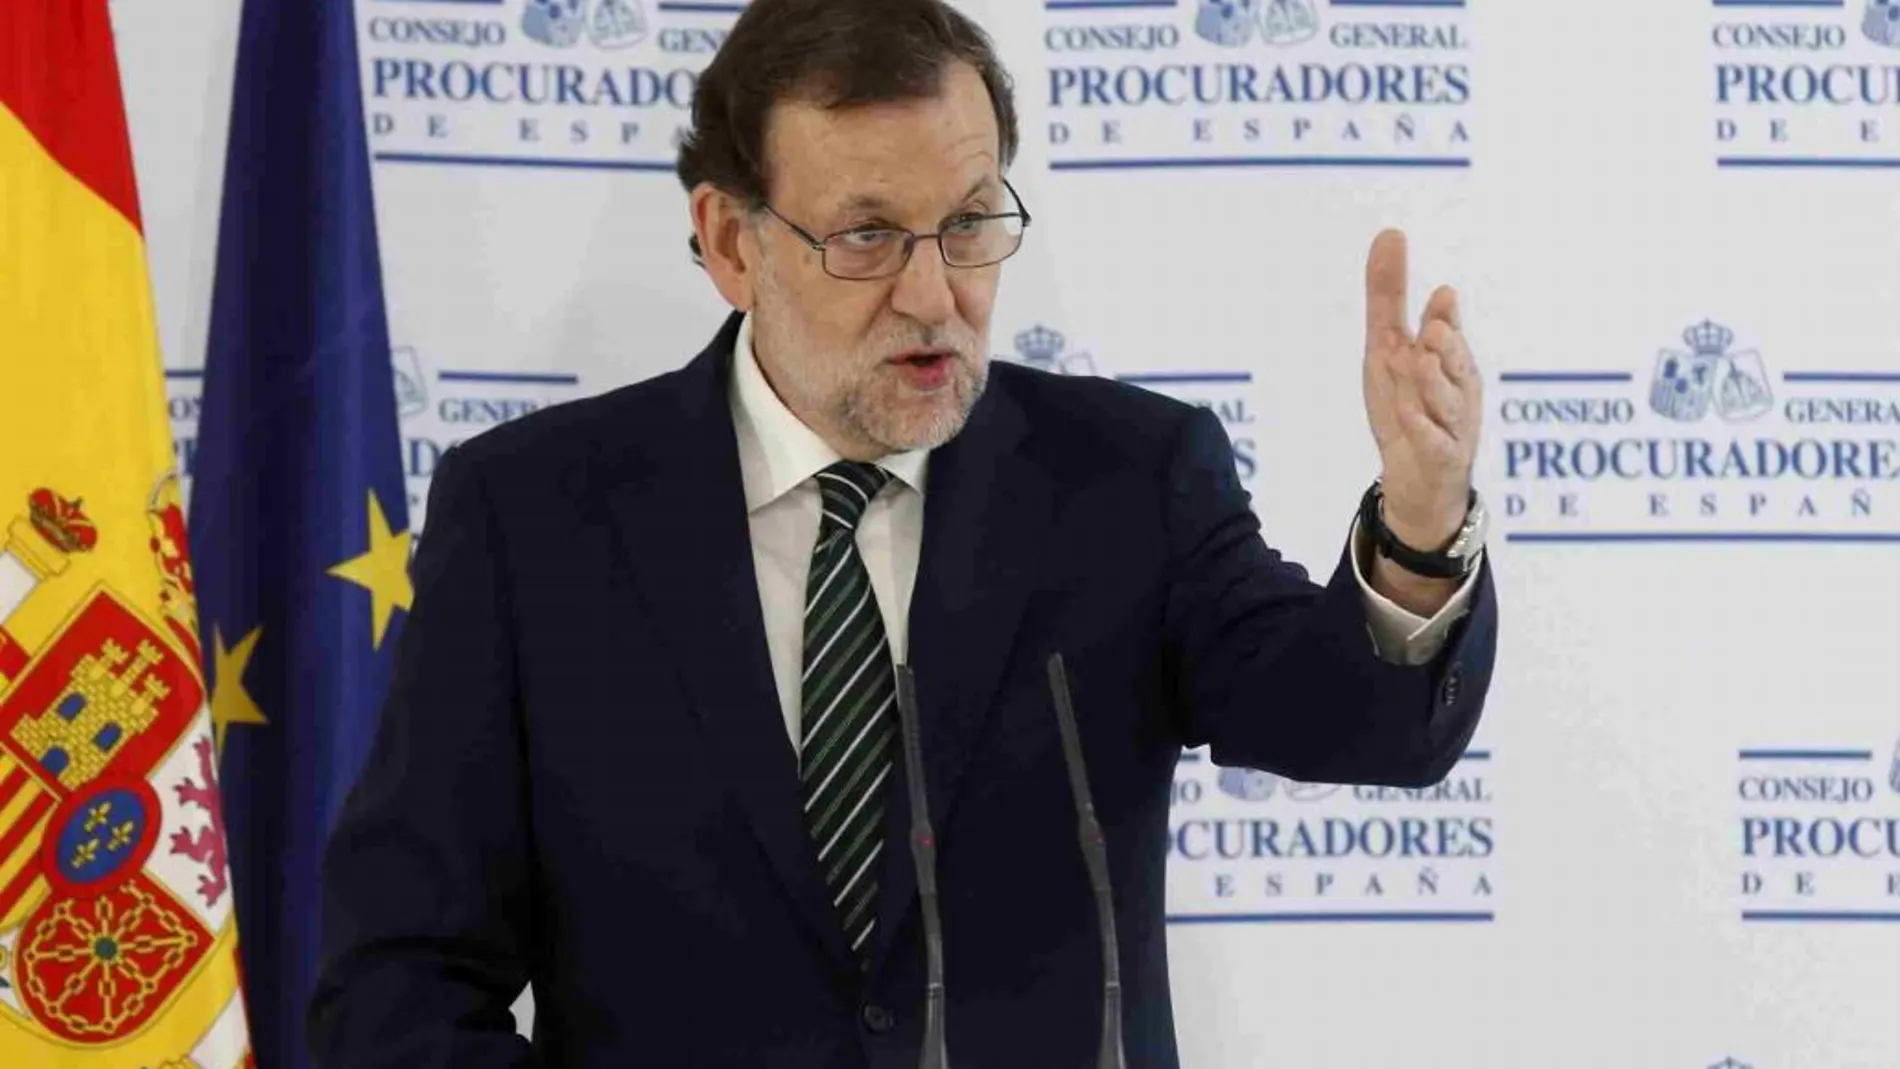 Rajoy durante su intervención en la inauguración de la nueva sede del Consejo General de Procuradores de España en Madrid.